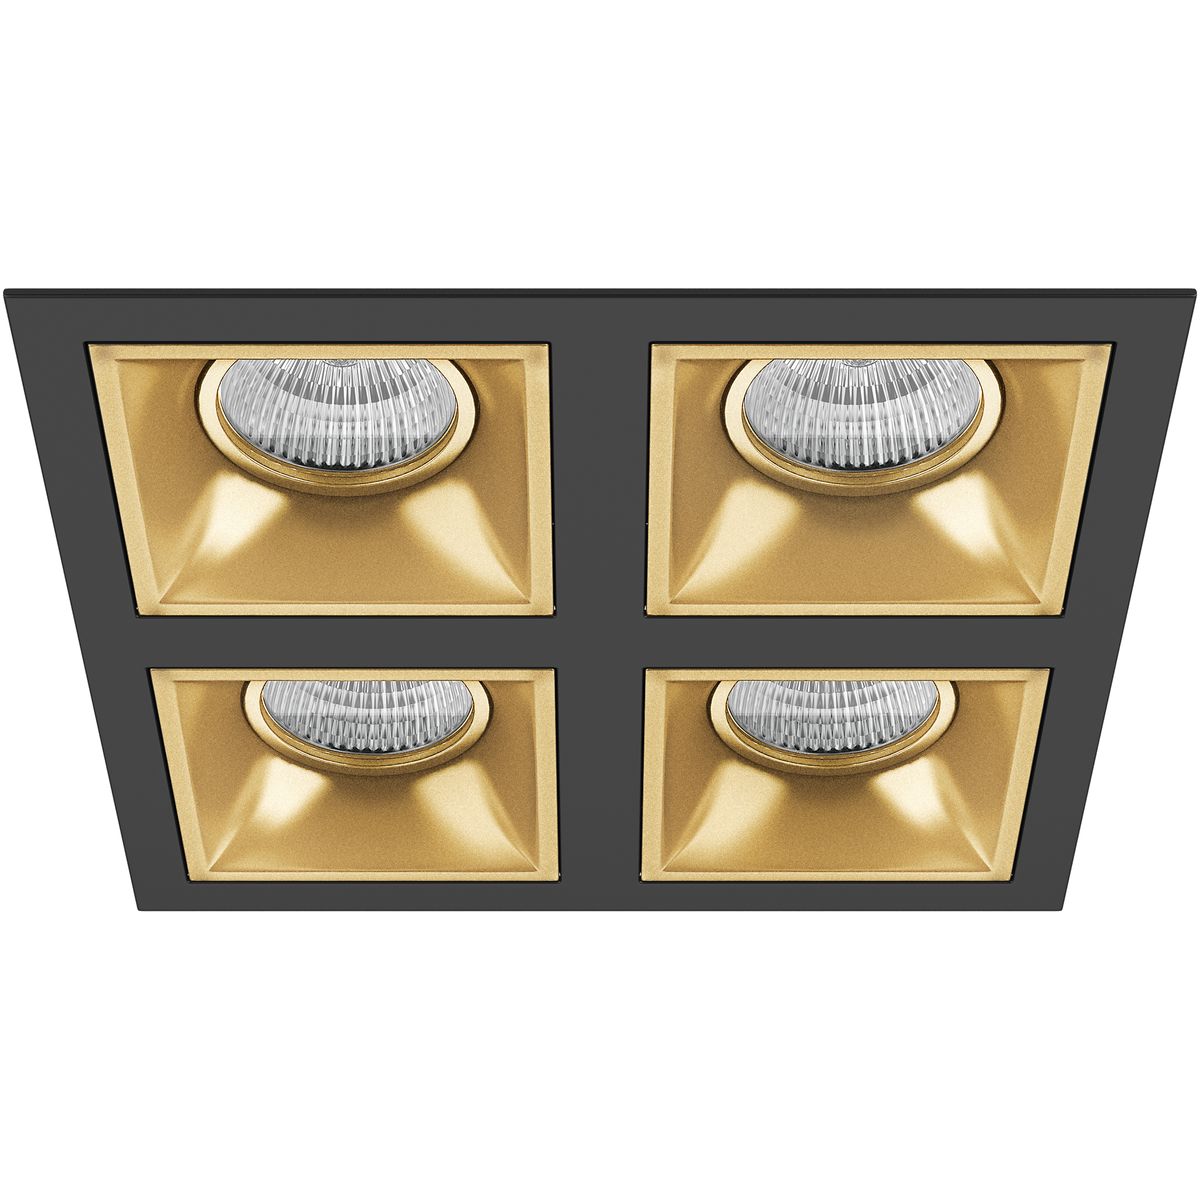 Встраиваемый светильник Lightstar Domino Quadro (214547+214503+214503+214503+214503) D54703030303